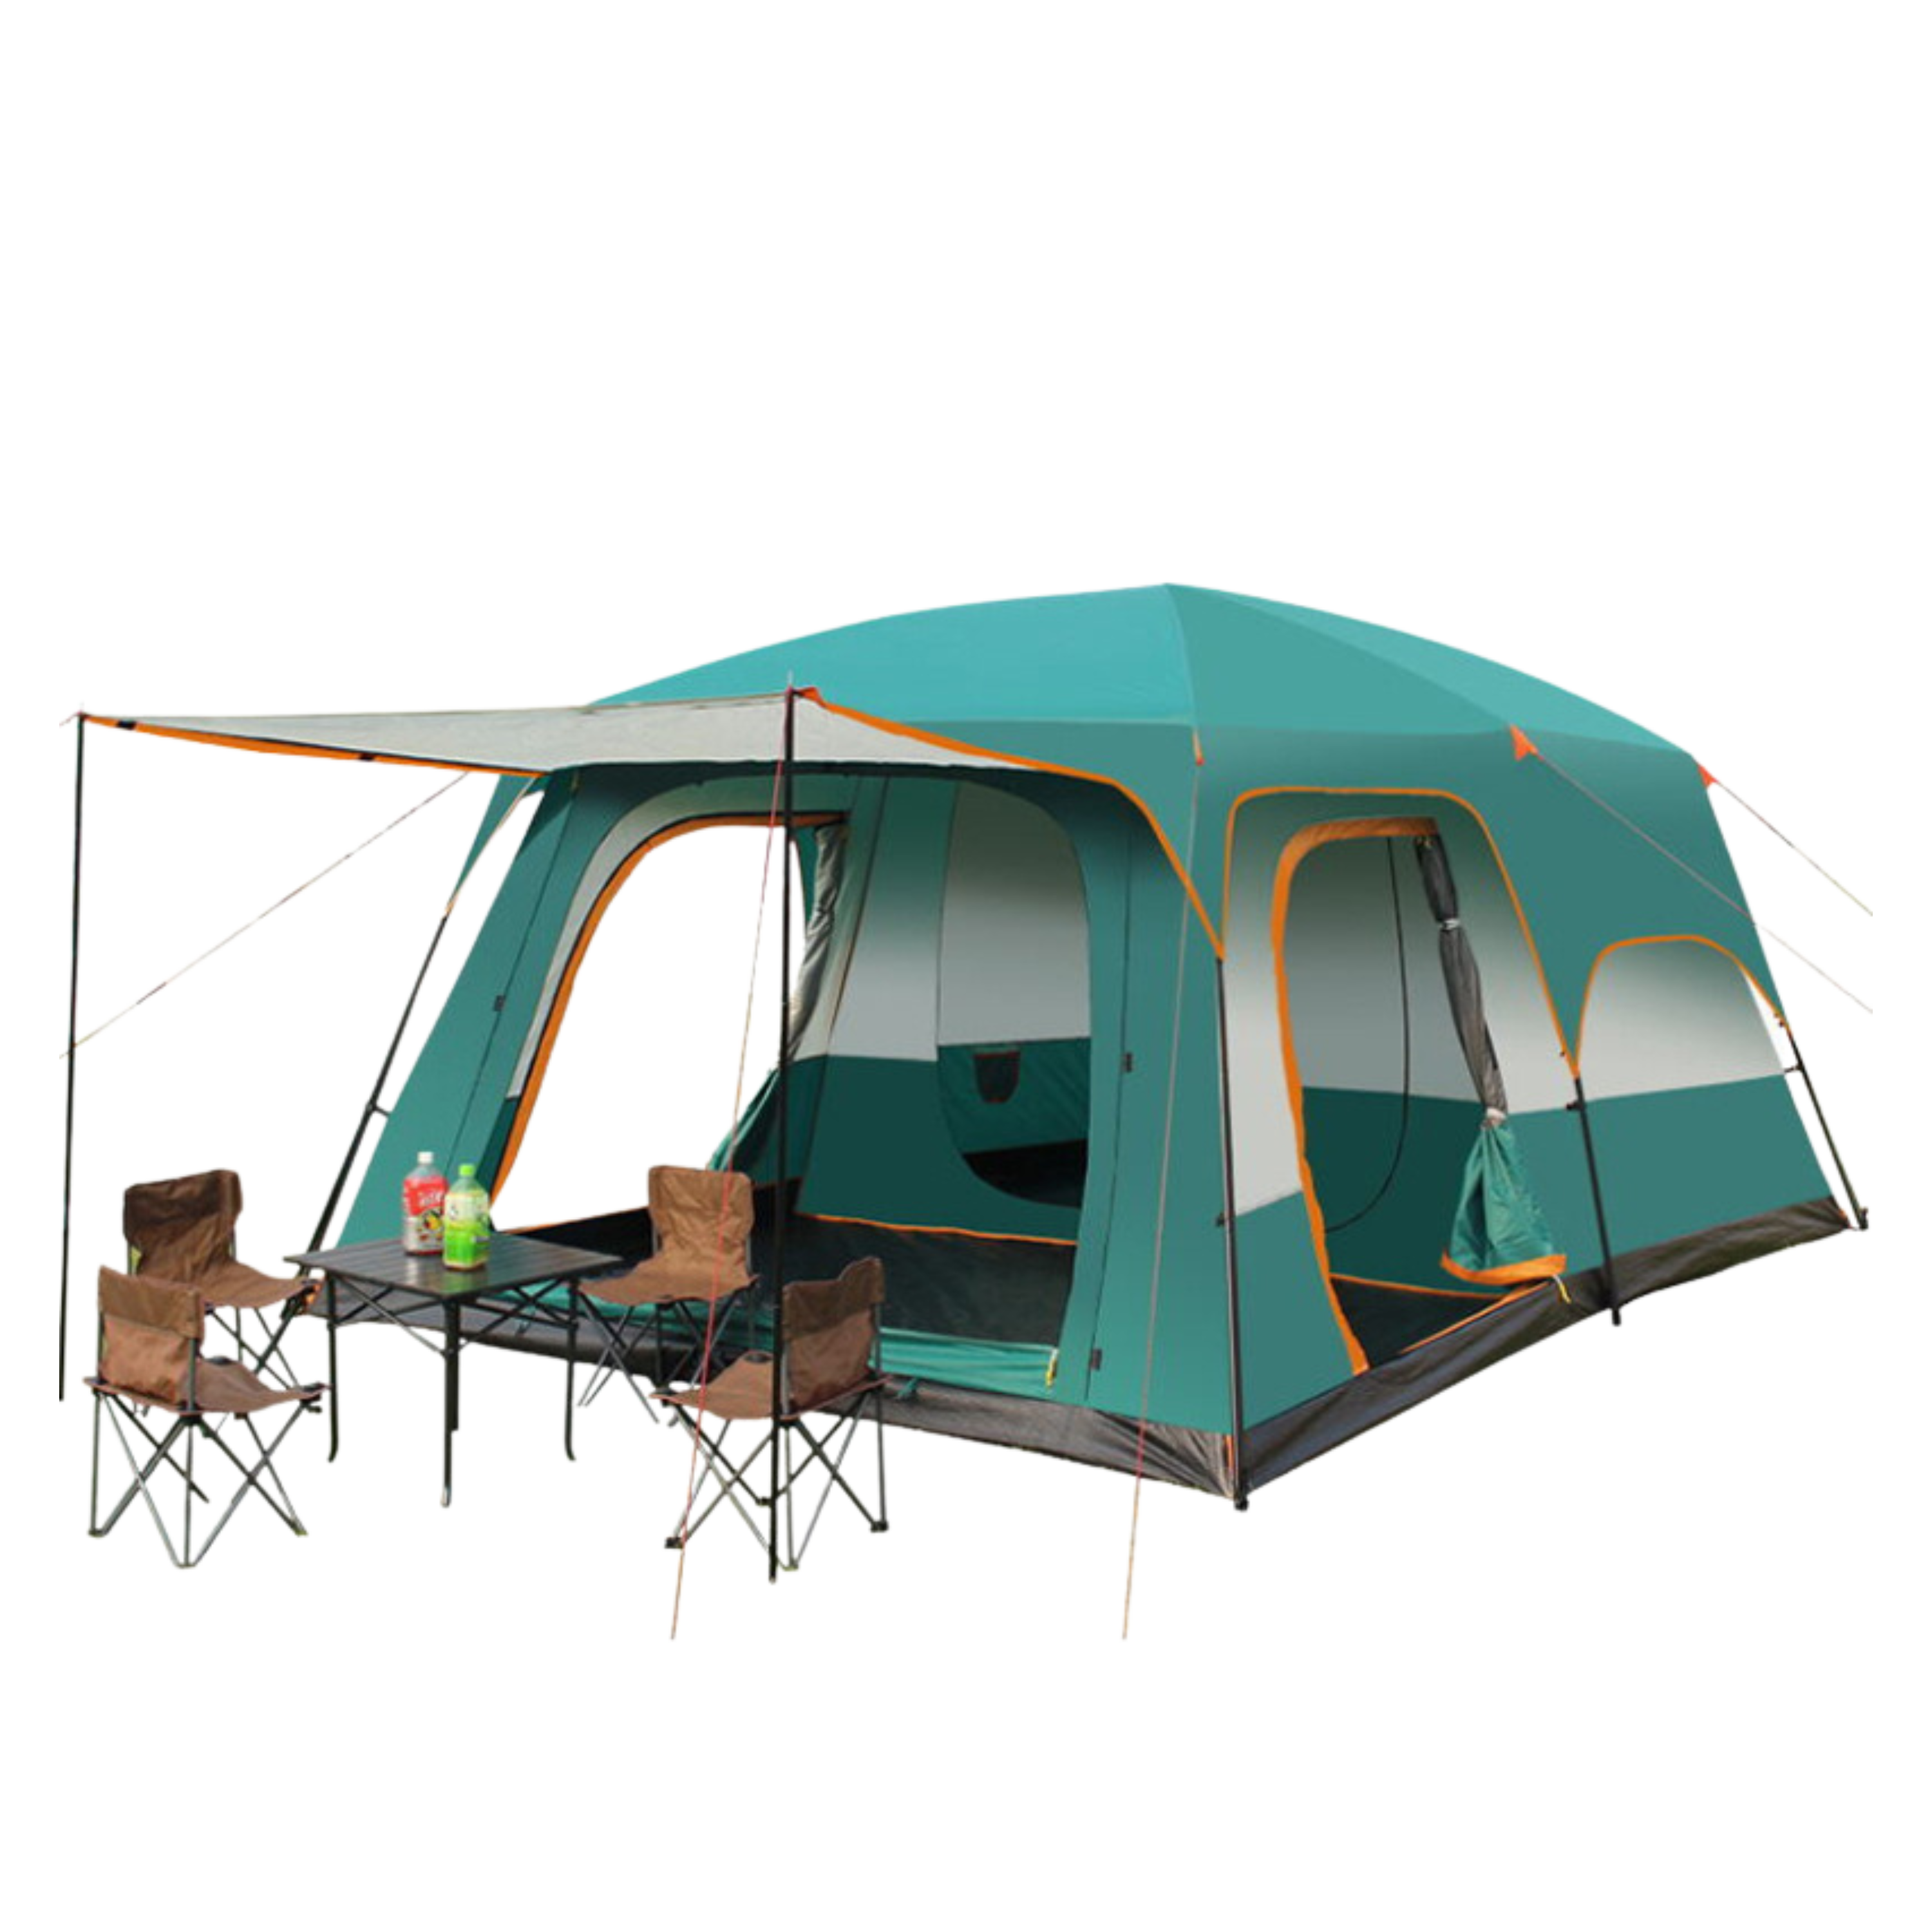 FamilyTentPro™ Camping Zelt für 4 Personen - Komfort und Qualität für Ihre Outdoor-Abenteuer - SwissGadget